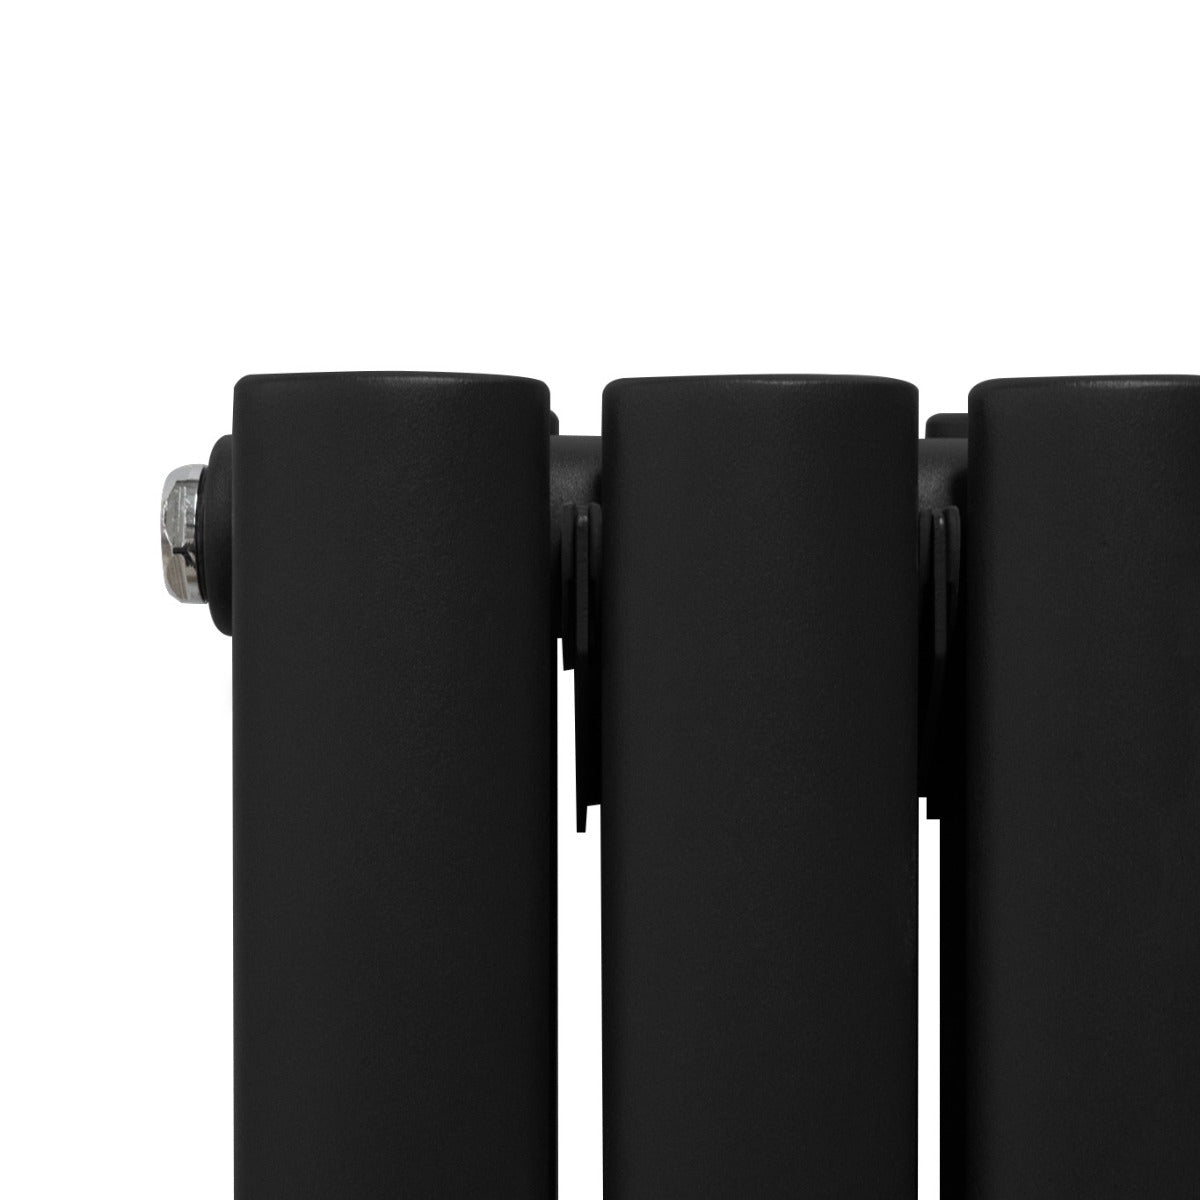 Radiador de Columna Ovalada con Espejo - 1800 mm x 500 mm - Negro